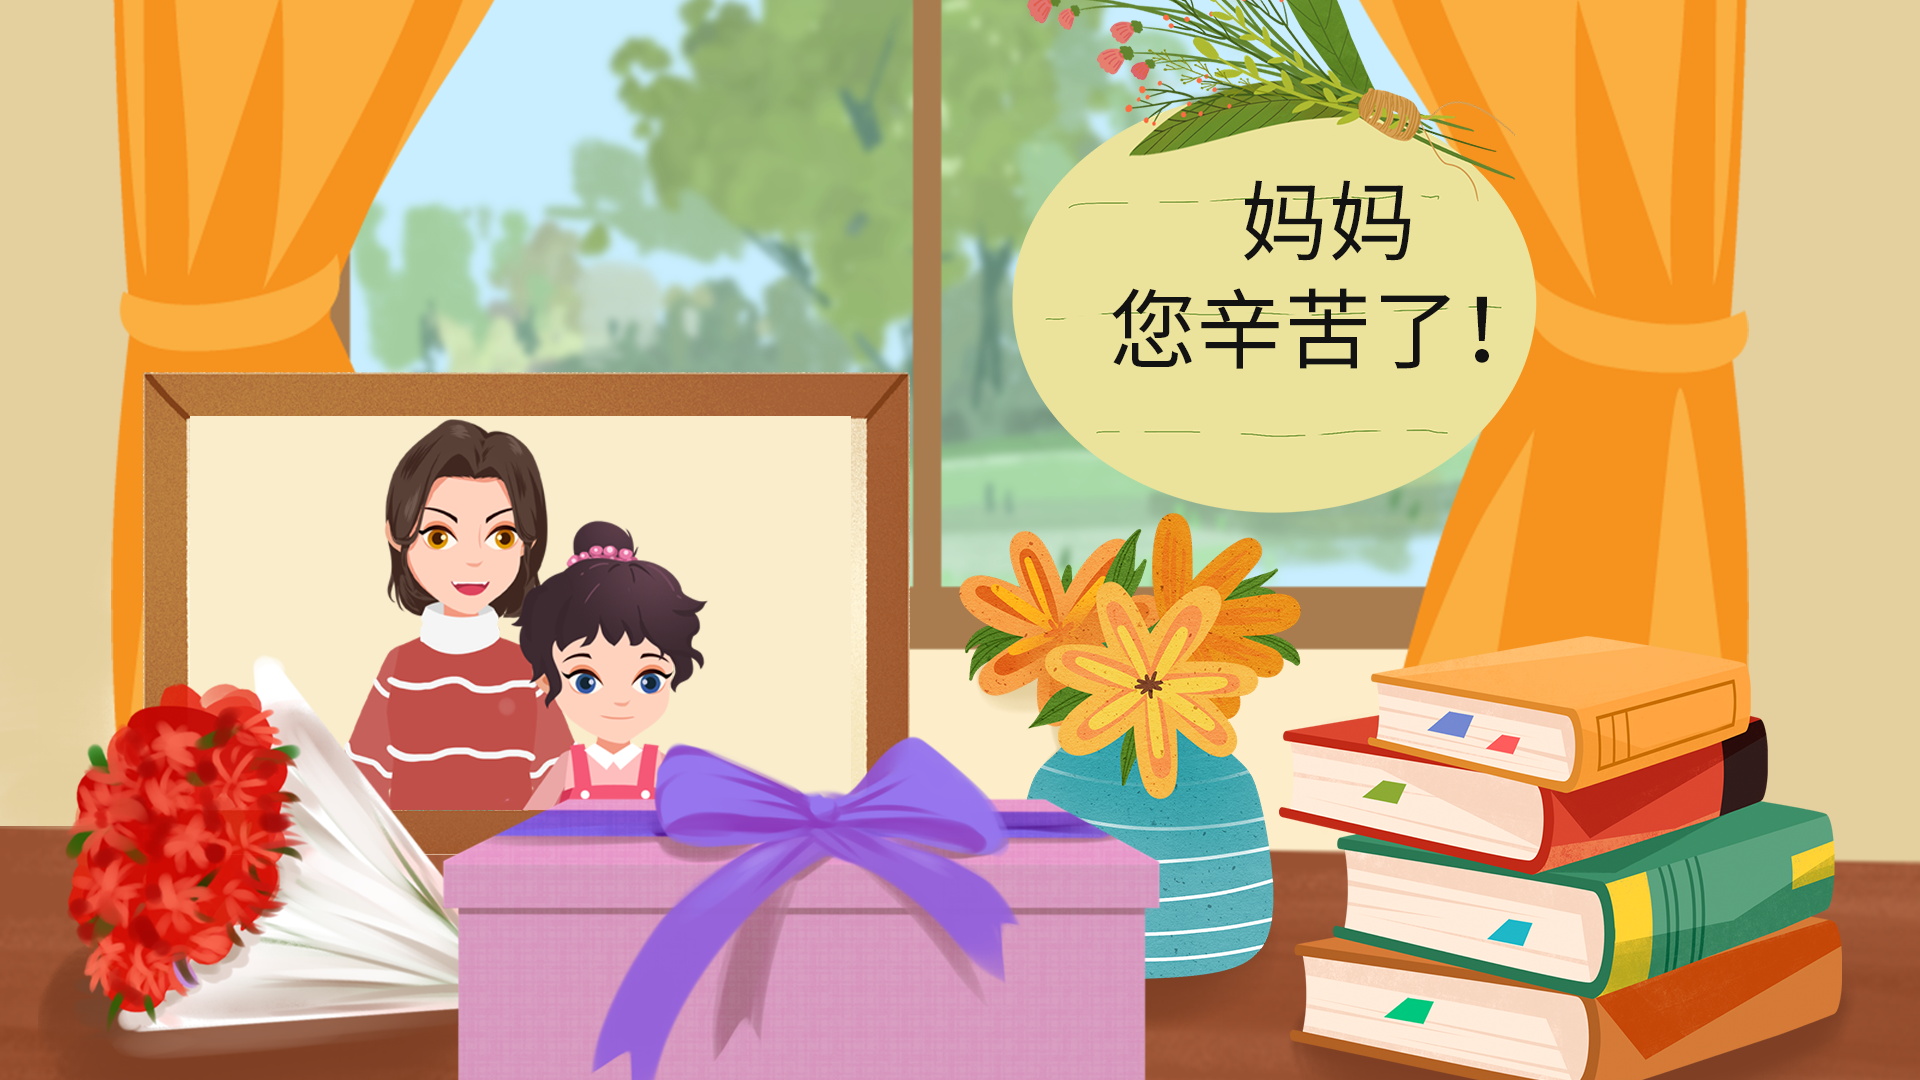 母亲节起源于哪个国家 母亲节在中国的发展